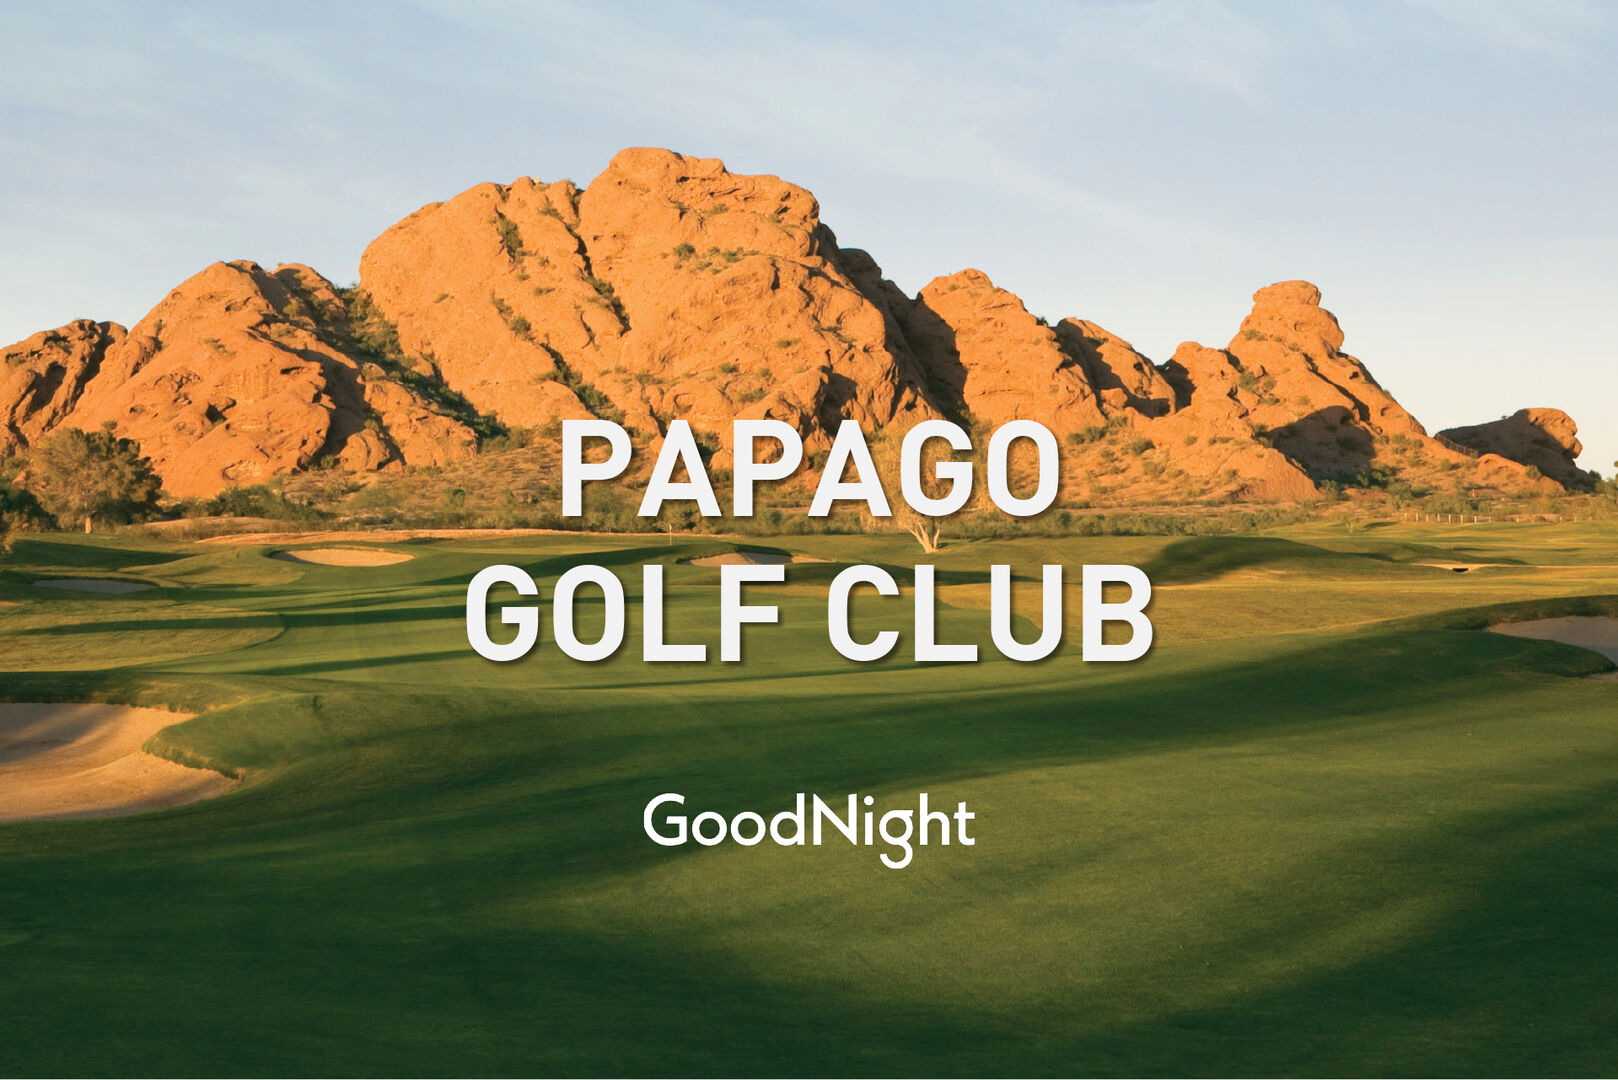 14 mins: Papago Golf Club